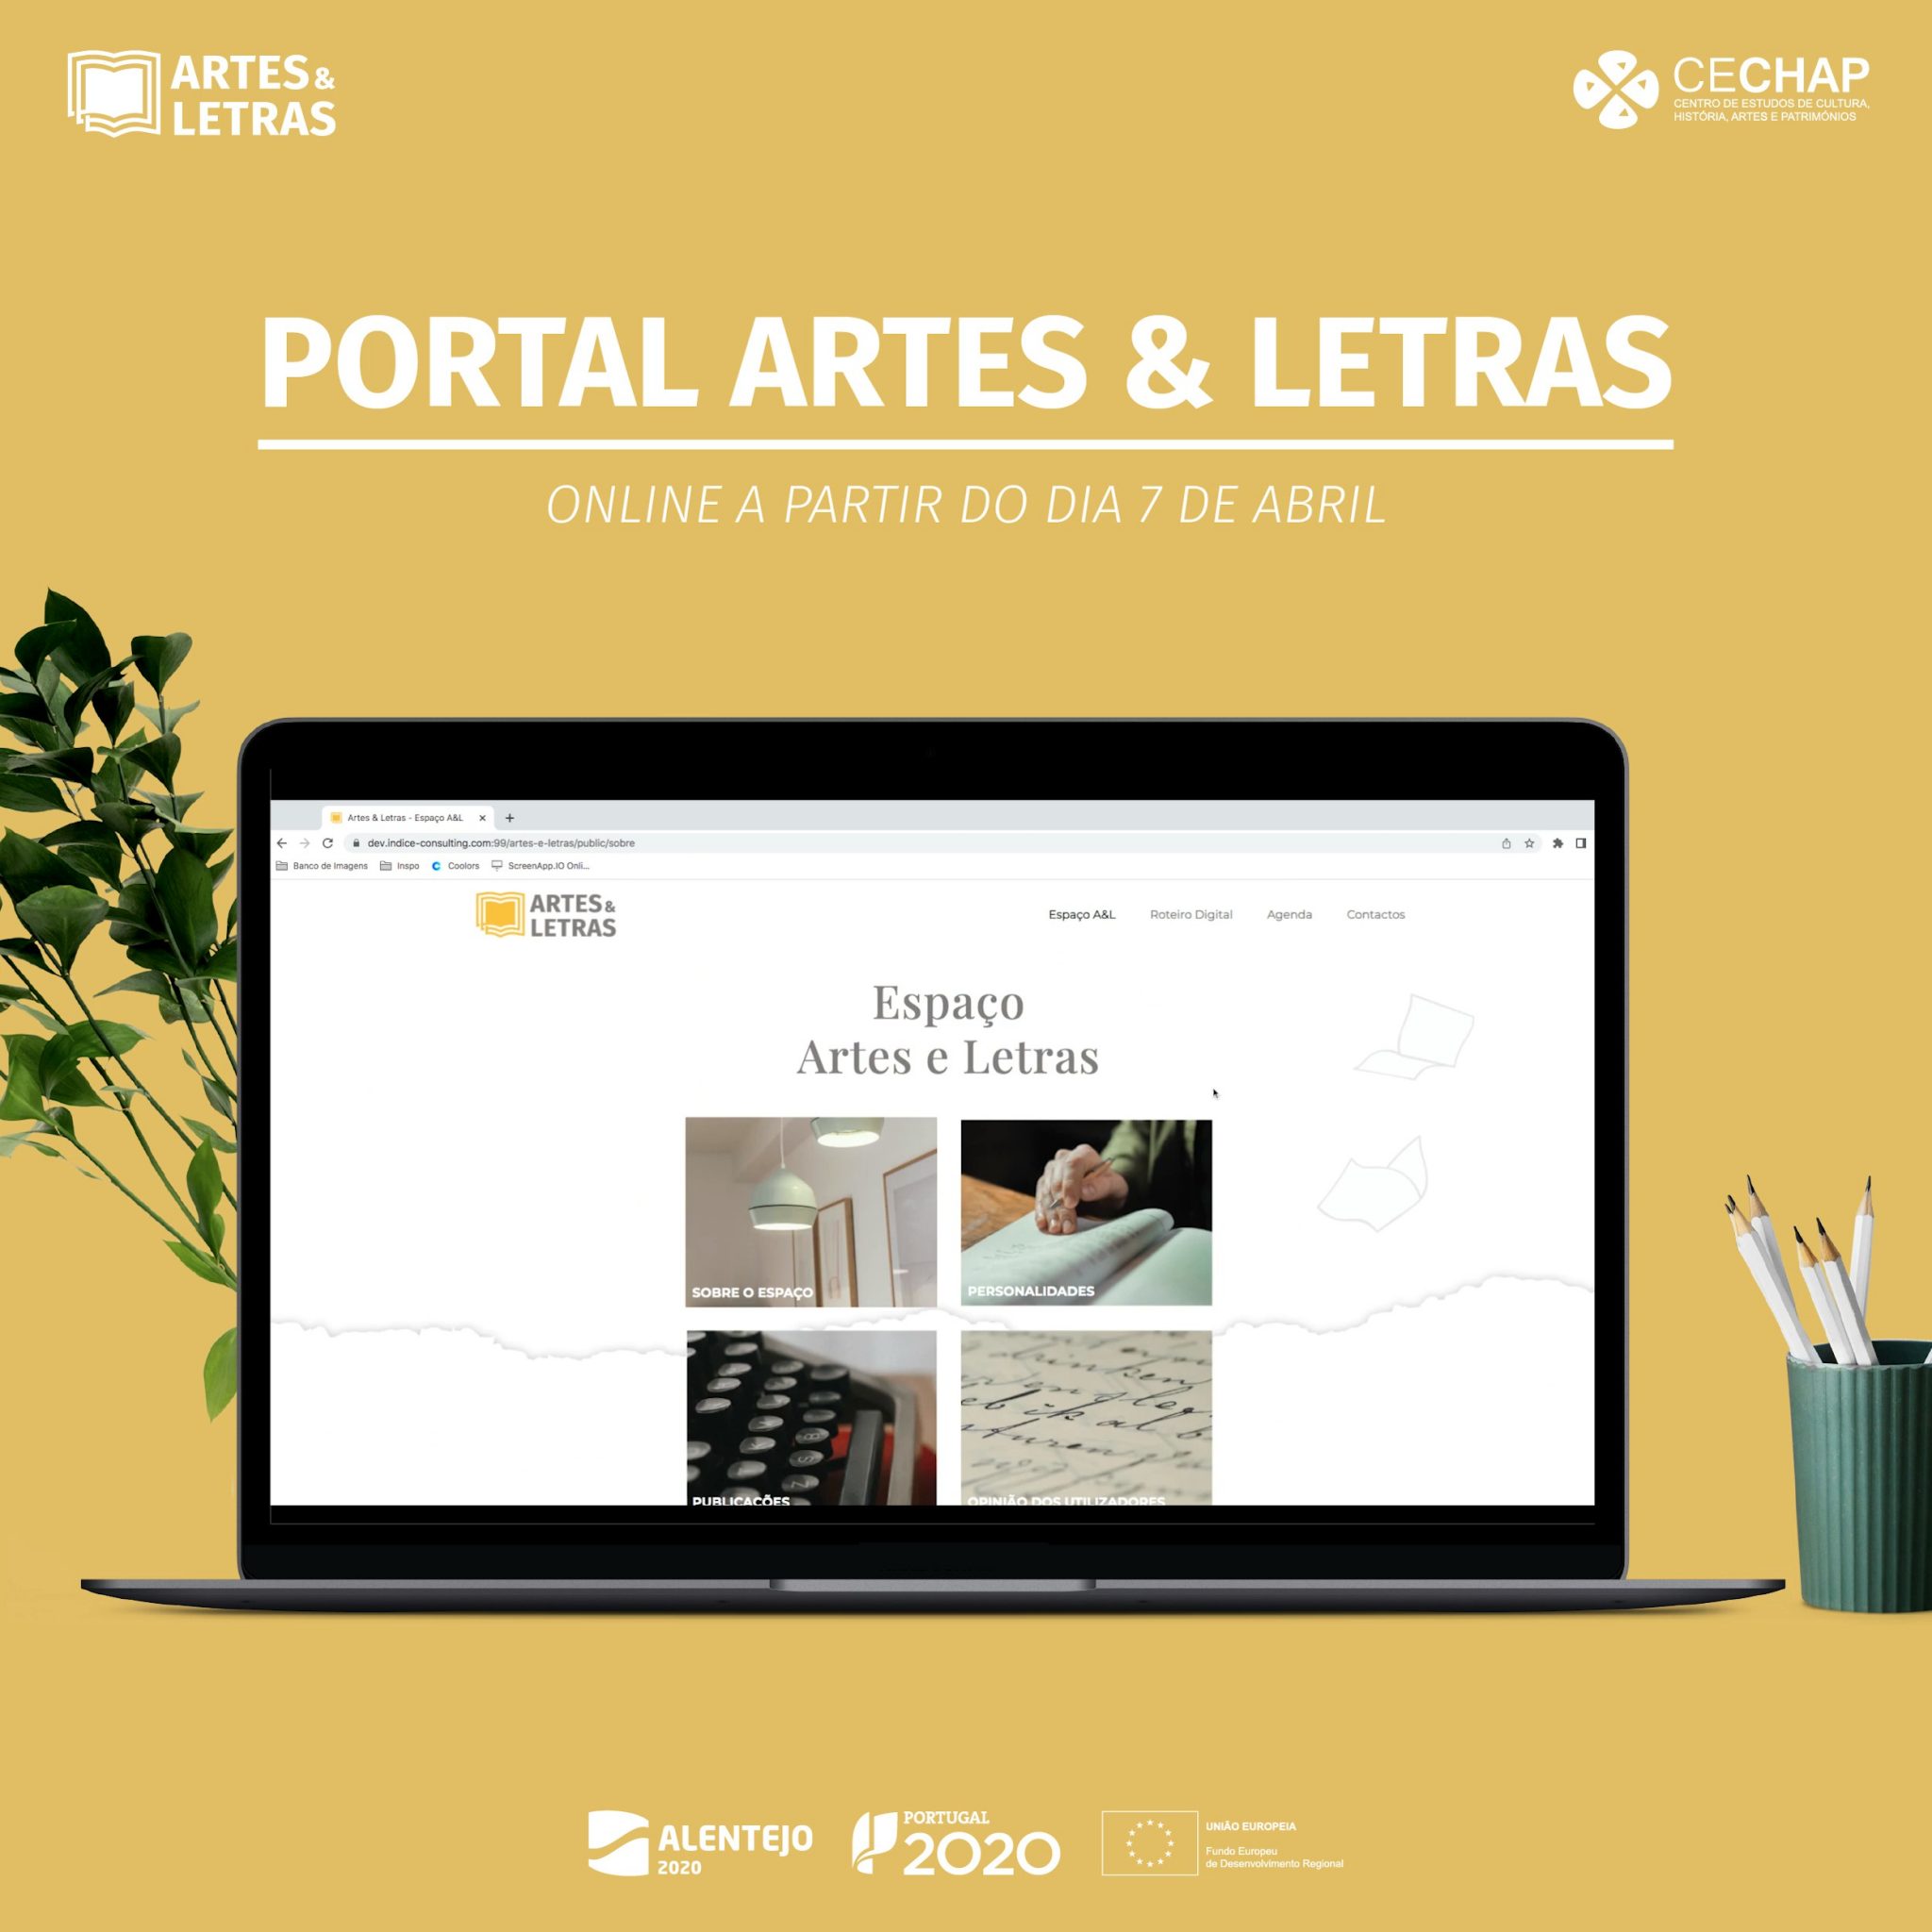 Portal "Artes & Letras"